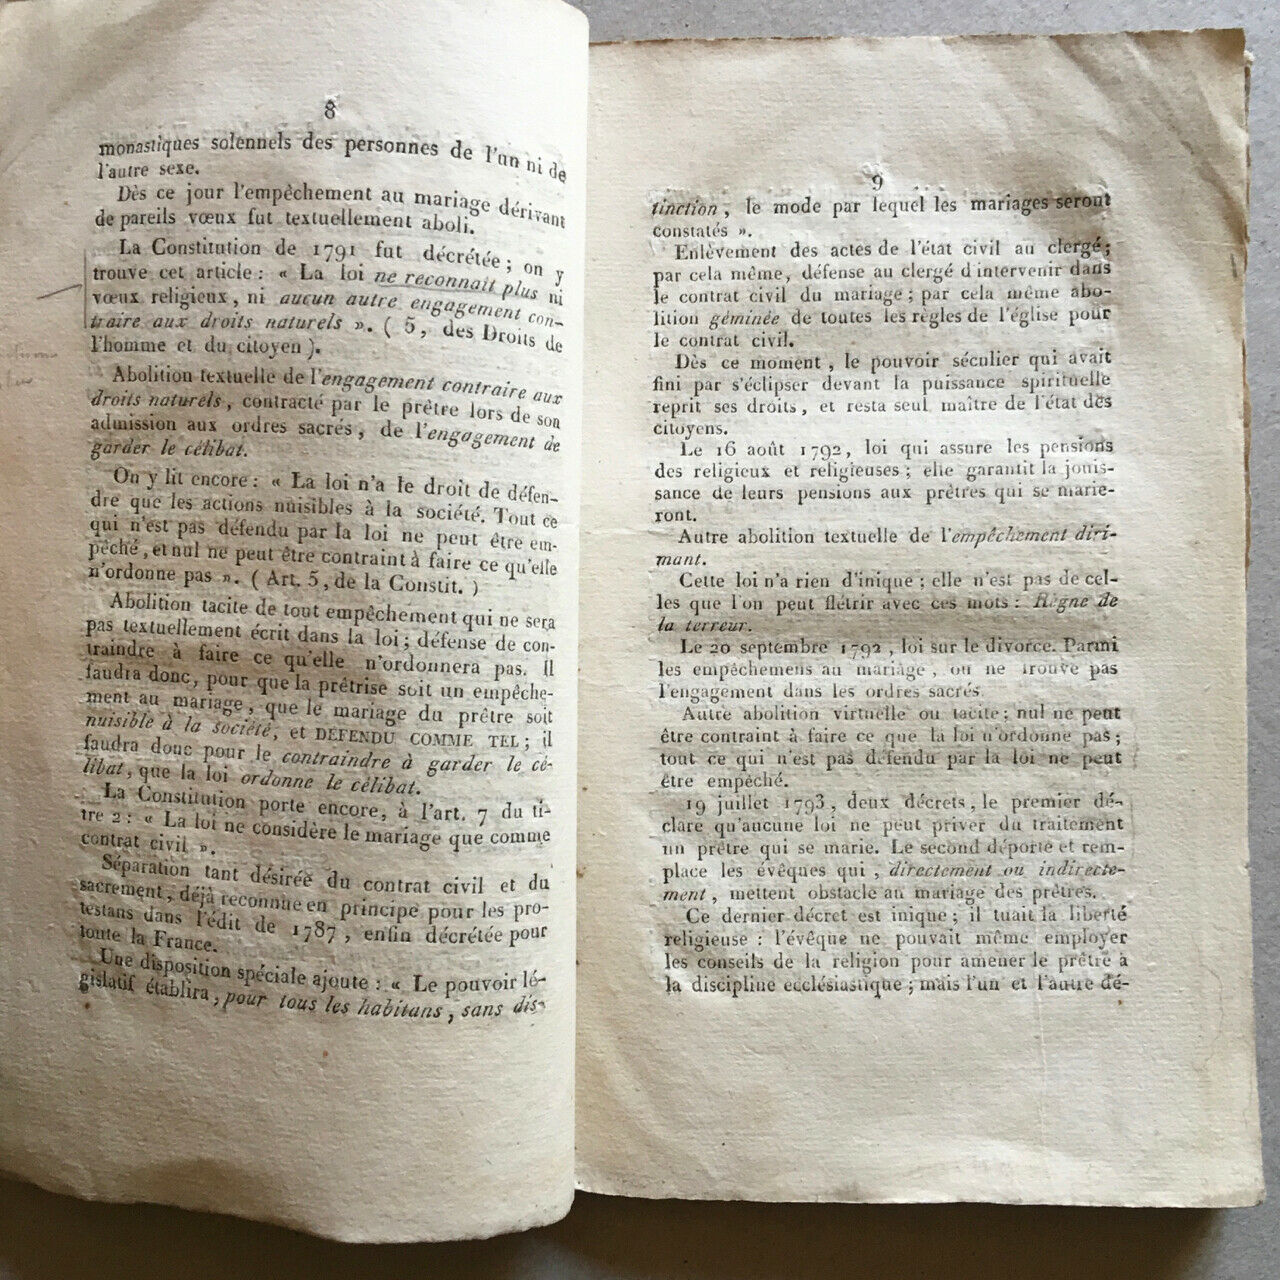 Crémieux, Adolphe — Dissertation sur cette question: L'engagement dans les ordres est-il un empêchement dirimant au mariage? — édition originale — Durand-Belle — 1828